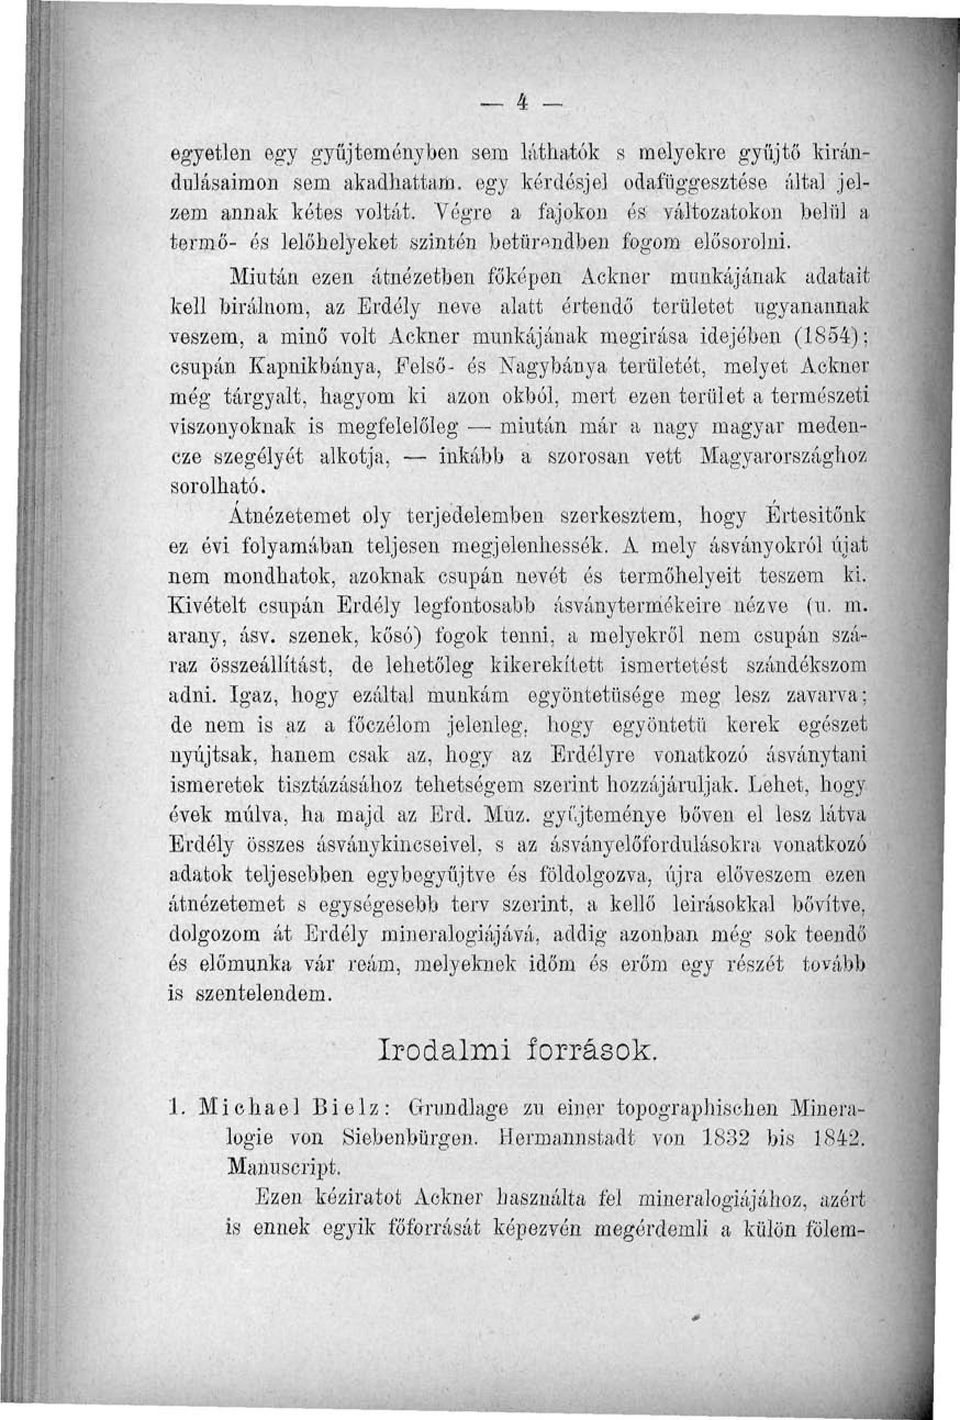 Mintán ezen átnézetben főképen Ackner munkájának adatait kell bírálnom, az Erdély neve alatt értendő területet ugyanannak veszem, a minő volt Ackner munkájának megírása idejében (1854); csupán